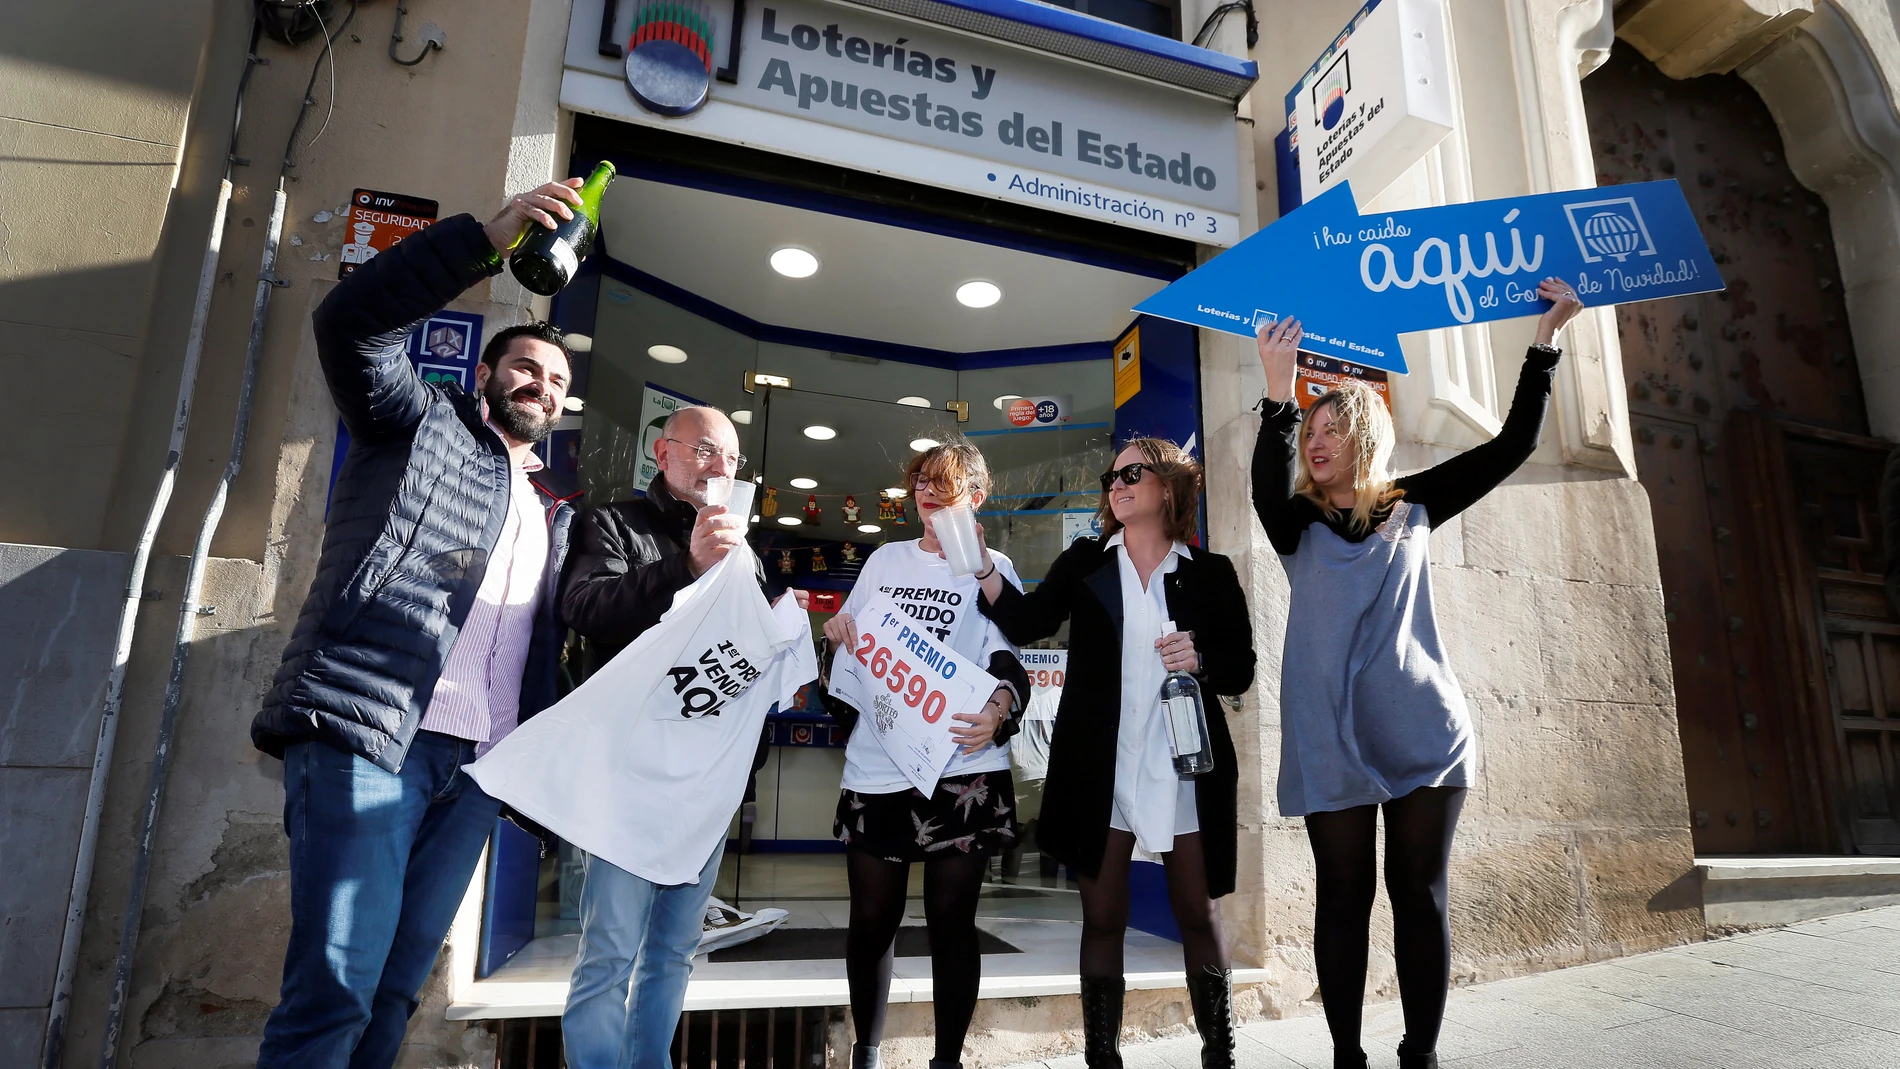 La administración de lotería nº 3 de Alcoy (Alicante) ha repartido 60 millones de euros del 26590, agraciado con el Gordo de navidad